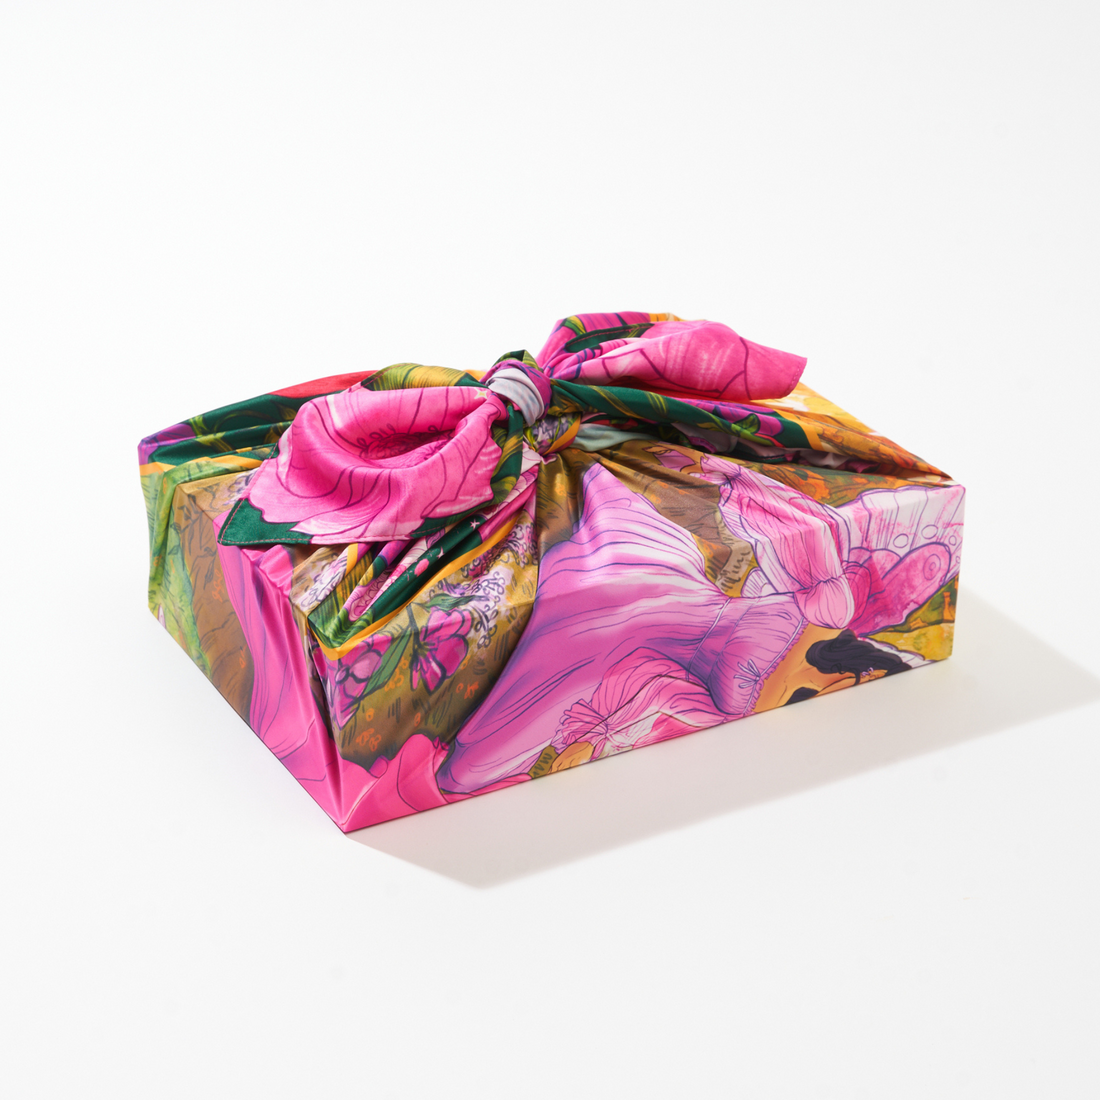 Folklore | 35" Furoshiki Gift Wrap by Noelle Anne Navarette